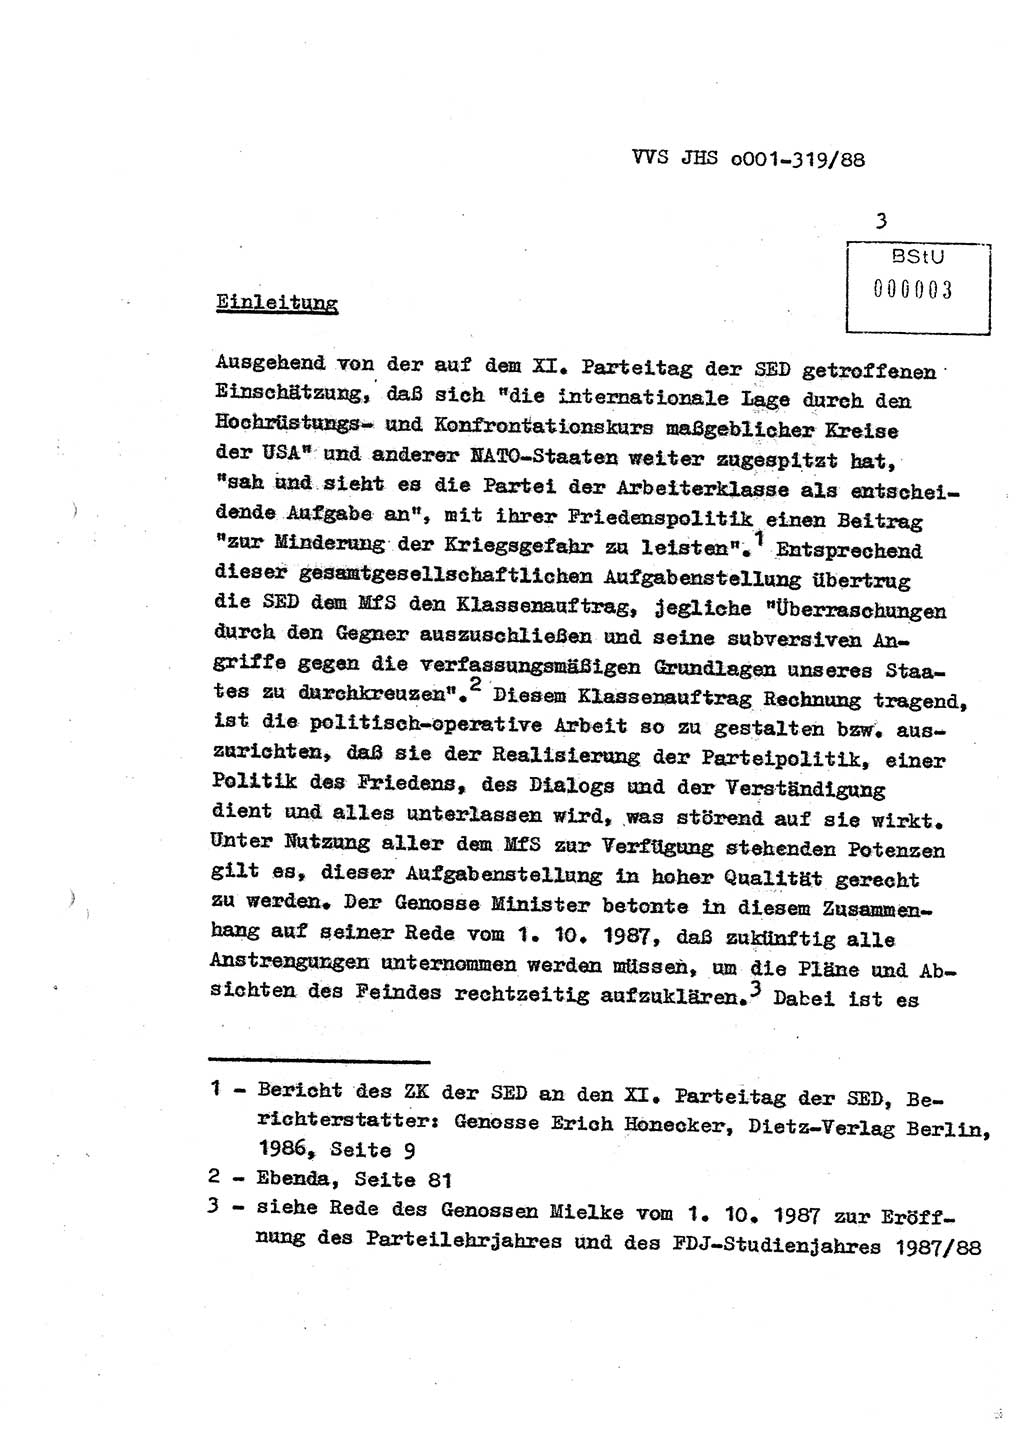 Diplomarbeit Offiziersschüler Holger Zirnstein (HA Ⅸ/9), Ministerium für Staatssicherheit (MfS) [Deutsche Demokratische Republik (DDR)], Juristische Hochschule (JHS), Vertrauliche Verschlußsache (VVS) o001-319/88, Potsdam 1988, Blatt 3 (Dipl.-Arb. MfS DDR JHS VVS o001-319/88 1988, Bl. 3)